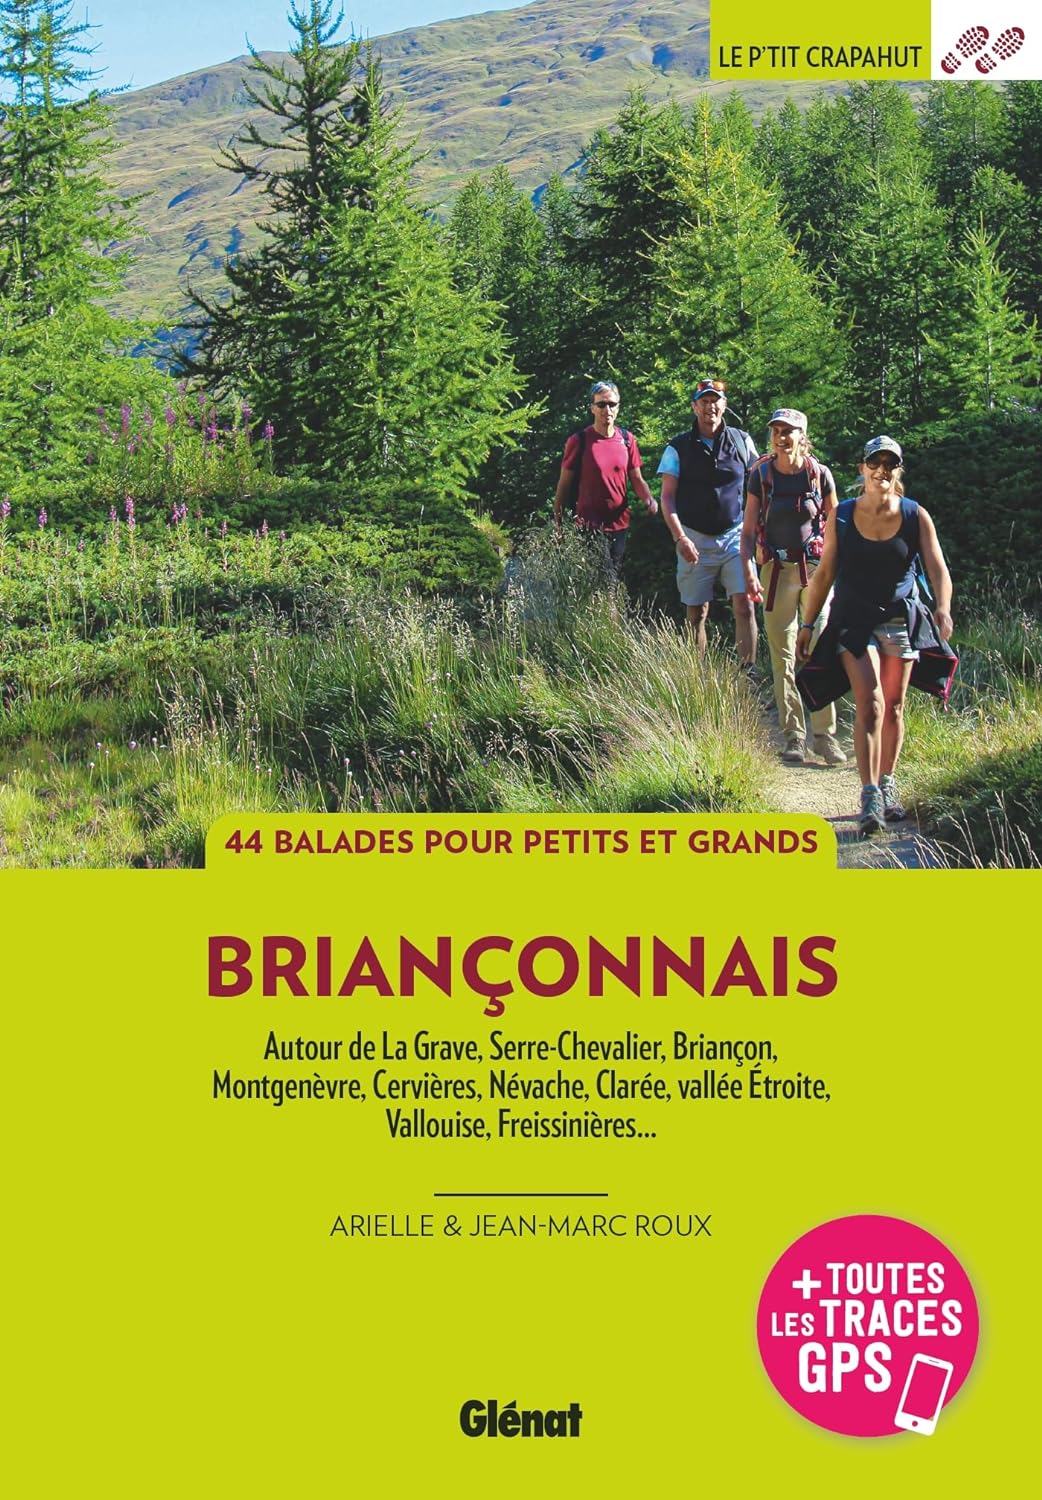 Walking guide - Briançonnais: La Grave, Serre-Chevalier, Briançon, Montgenèvre, Cervières, Névache, Vallouise, Freissinières | Glénat - P'tit Crapahut